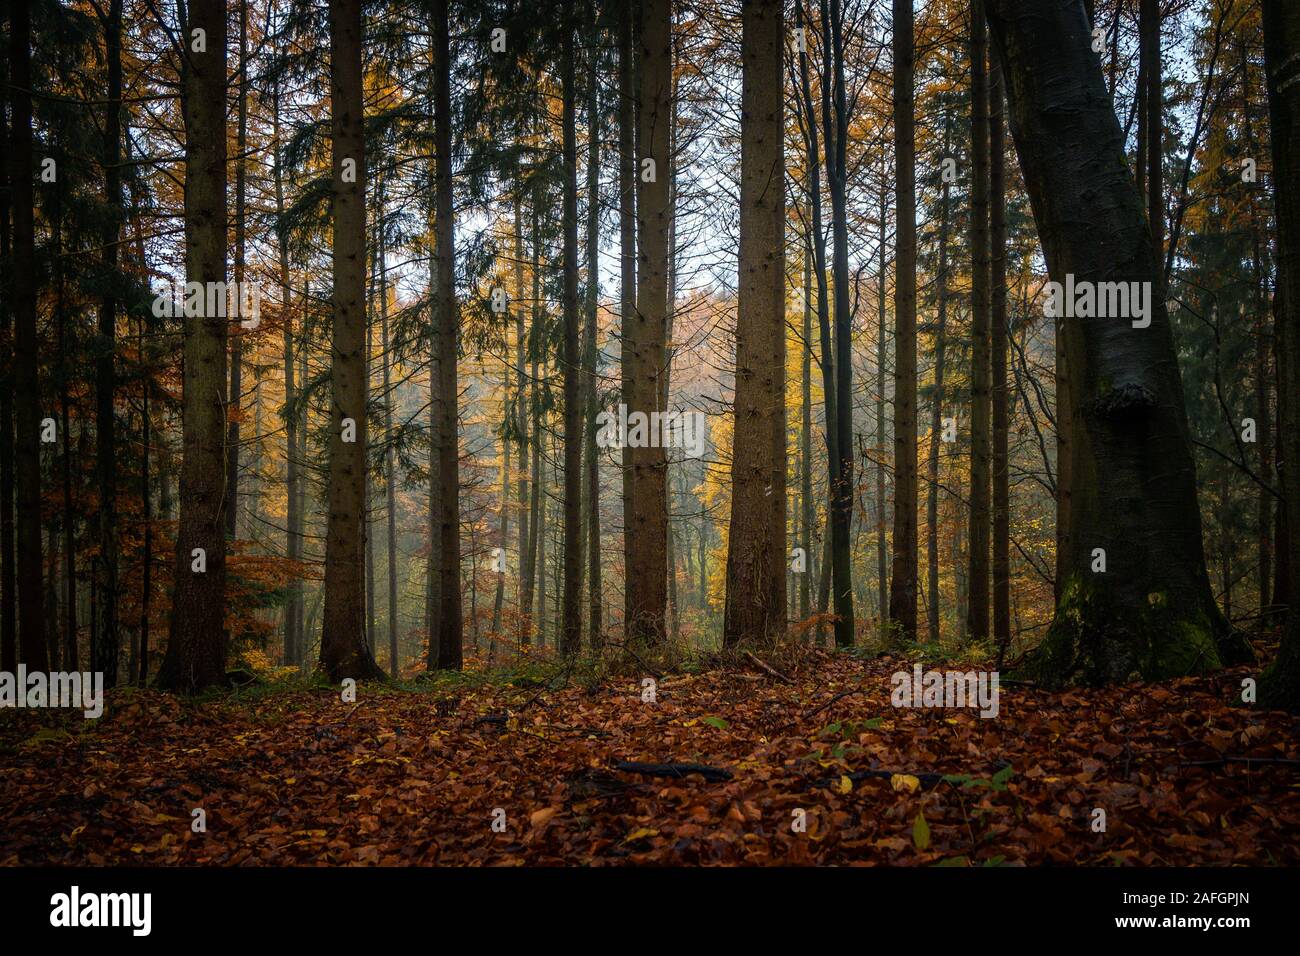 Dark tronchi di alberi in un misto di autunno foresta con foglie colorate, natura stagionale del paesaggio in Germania settentrionale Foto Stock